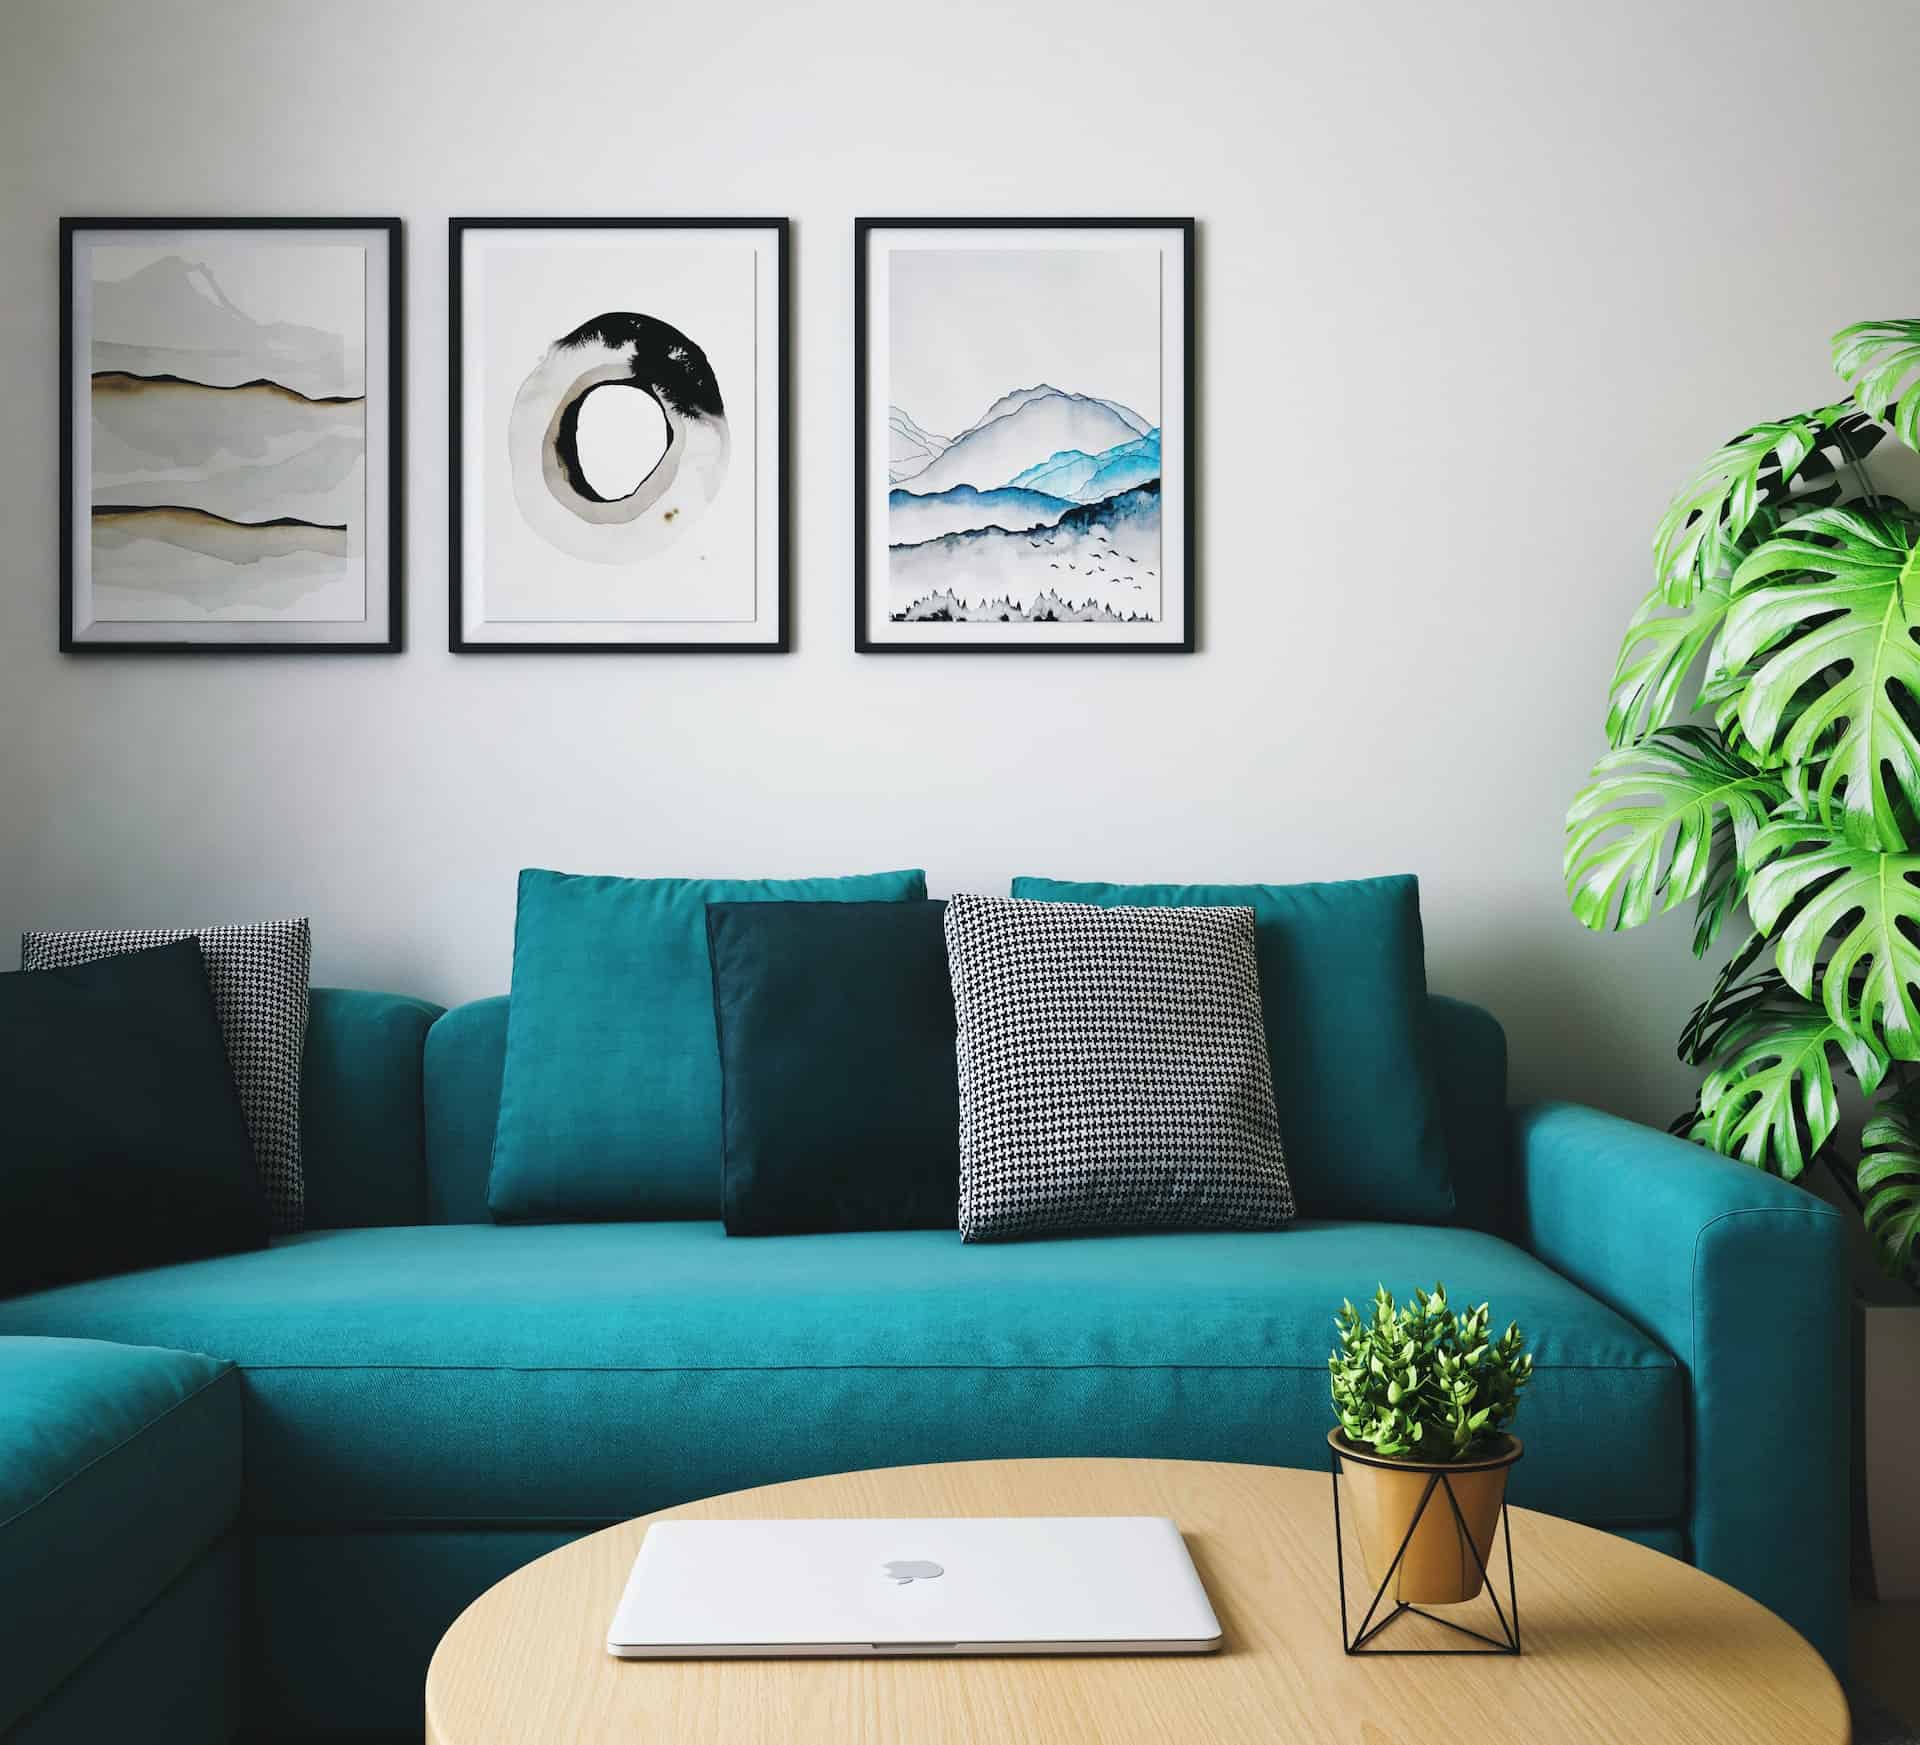 Pokrowiec na sofę — szybki i tani sposób na odświeżenie salonu